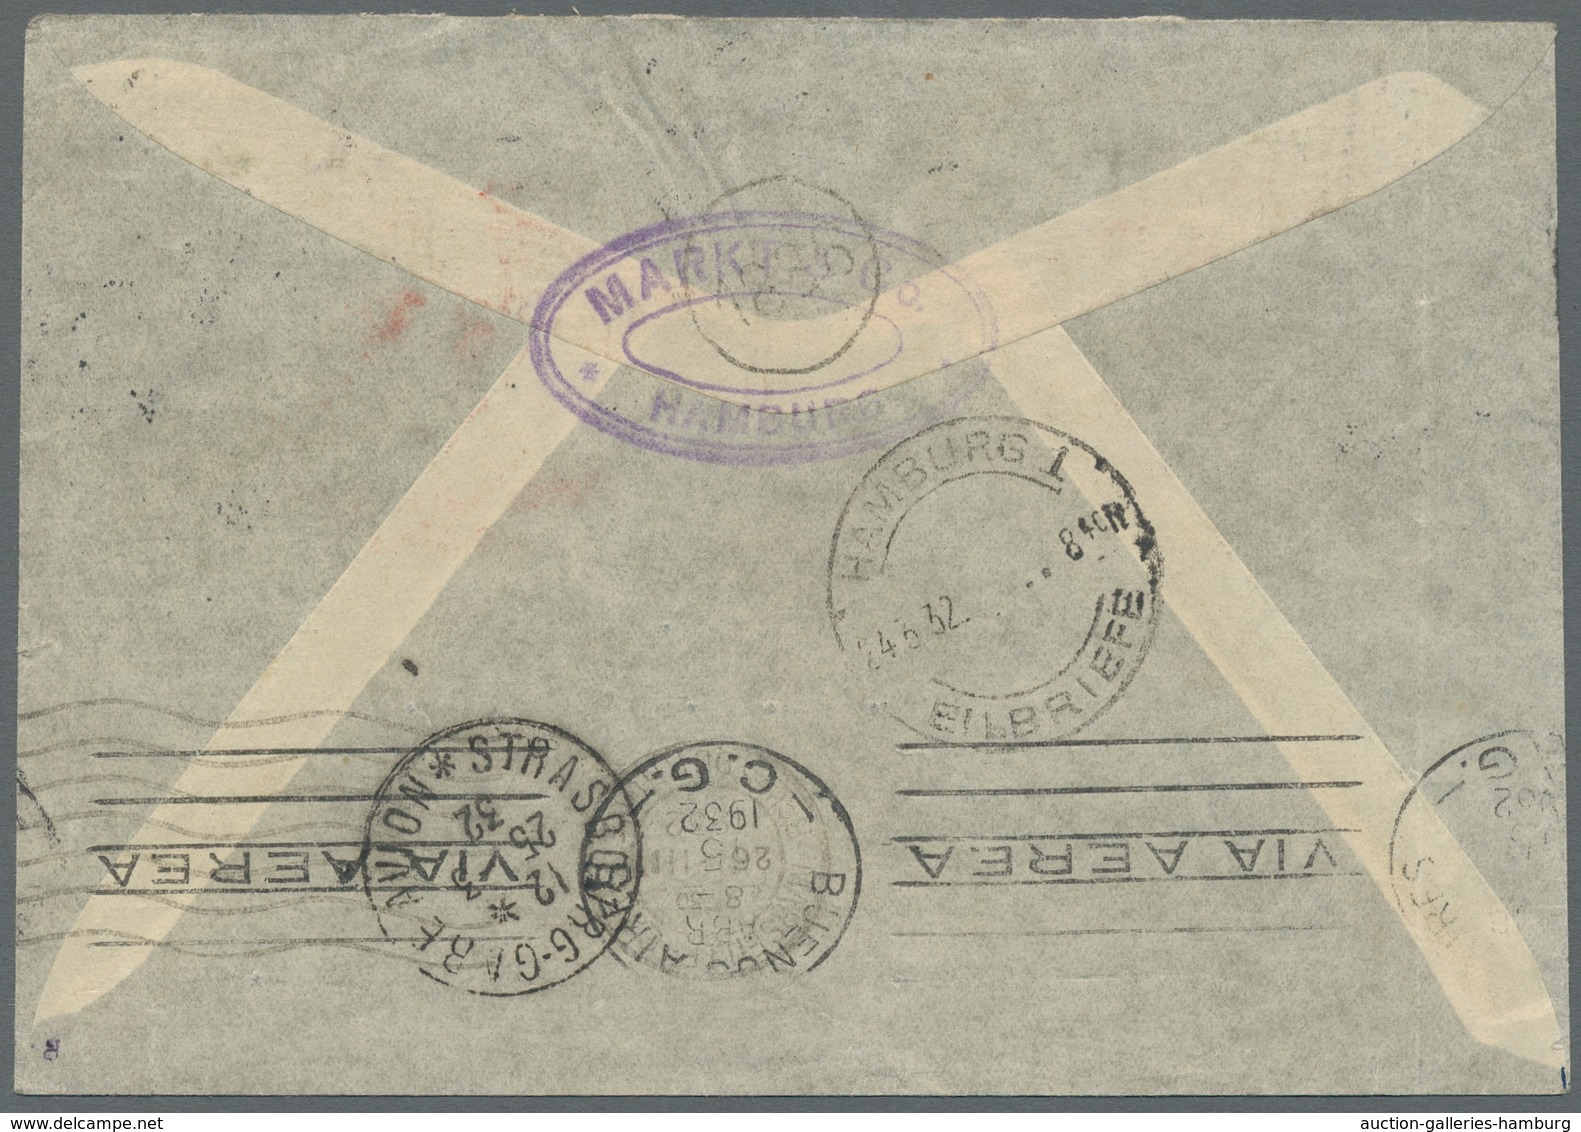 Flugpost Deutschland: 1932-1933, Drei Luftpost-Briefe Mit Aufdruck "PAR AVION: France-Amérique Du Su - Airmail & Zeppelin